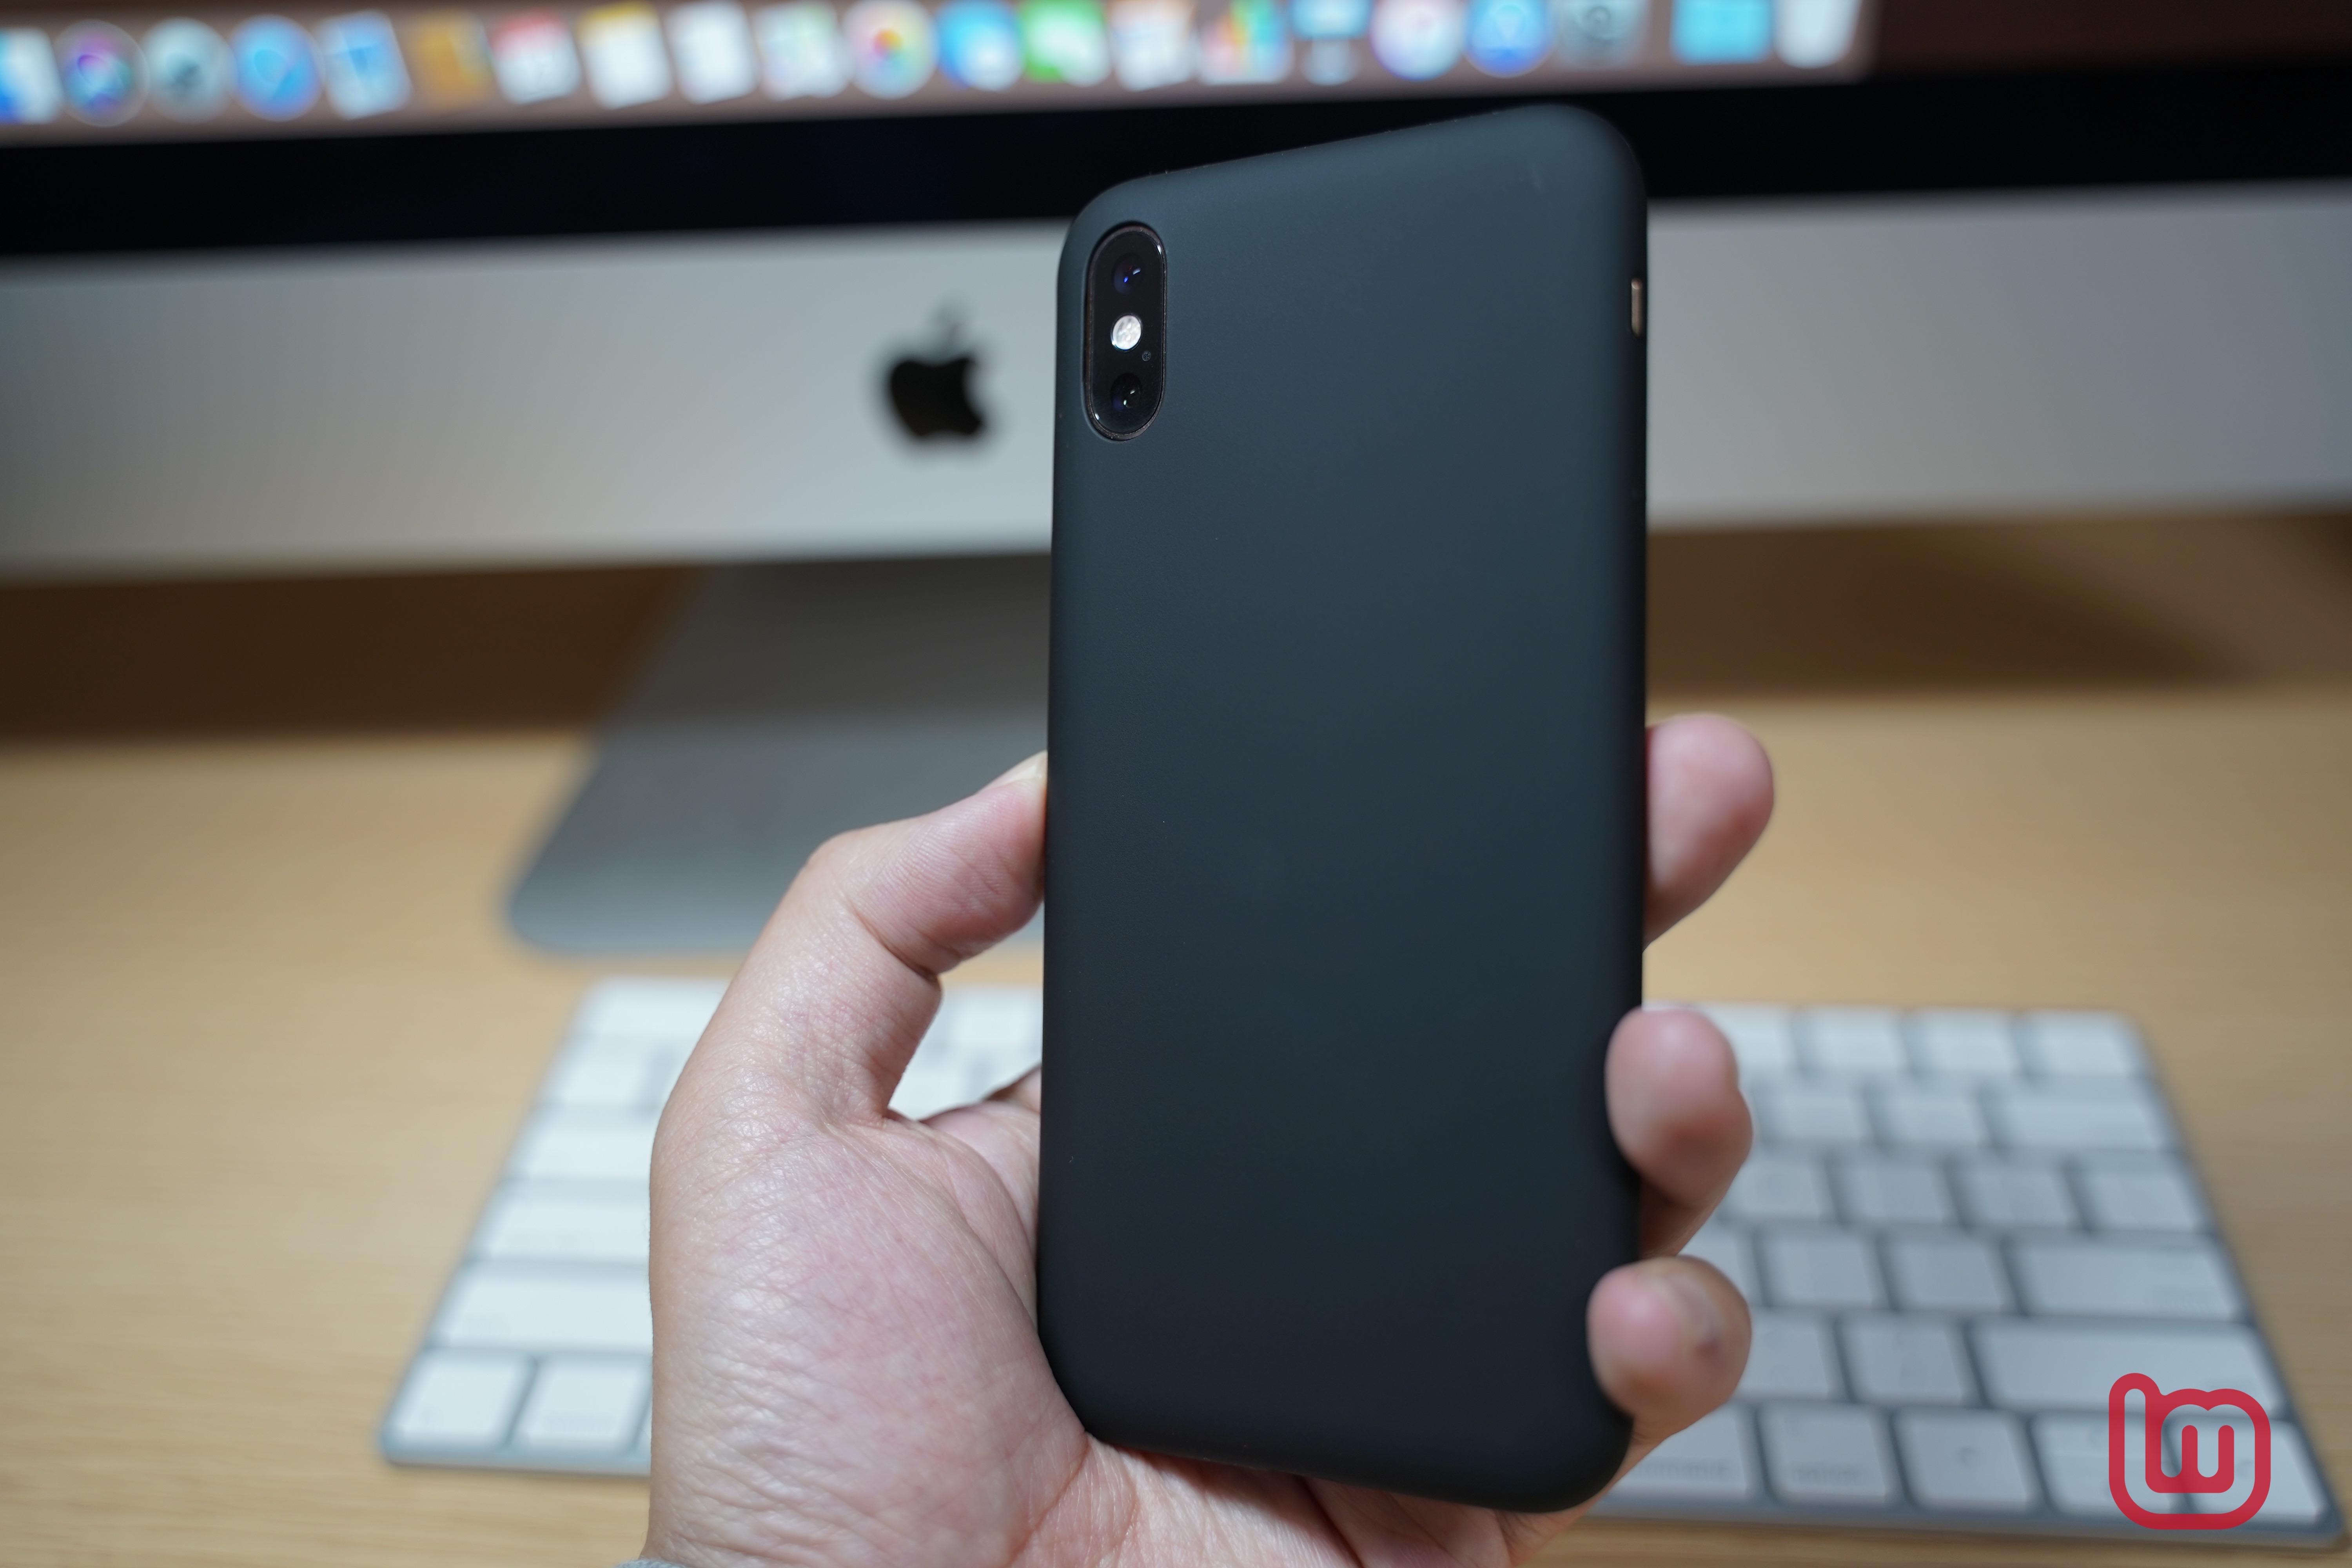 【レビュー】無駄がない美しいデザインのiPhone XS専用ケース「MYNUS iPhone XS CASE」をチェック